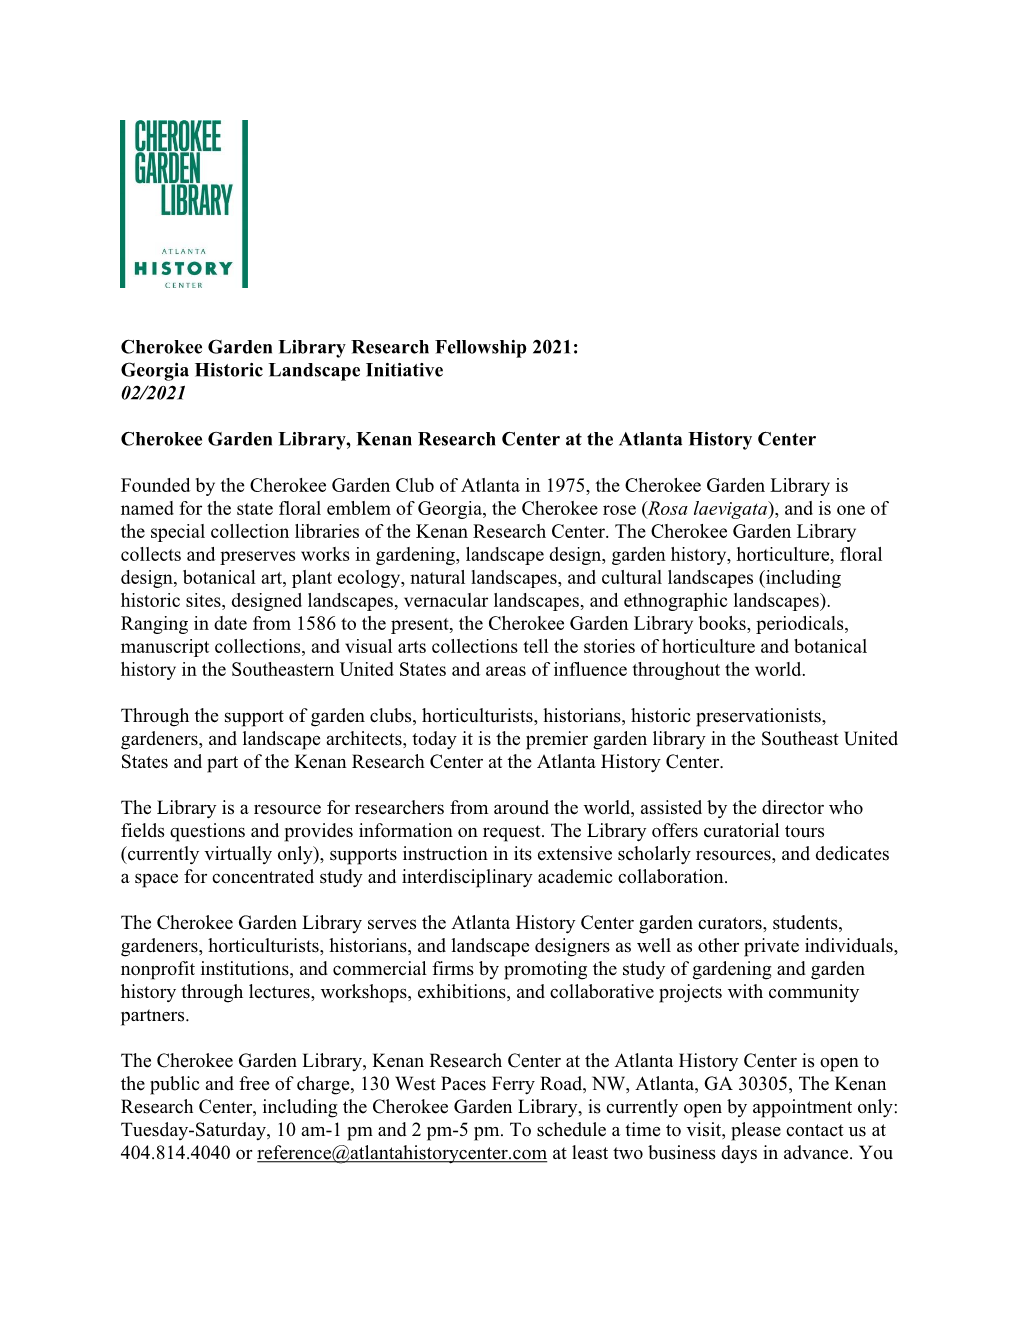 Cherokee Garden Library Research Fellowship 2021: Georgia Historic Landscape Initiative 02/2021